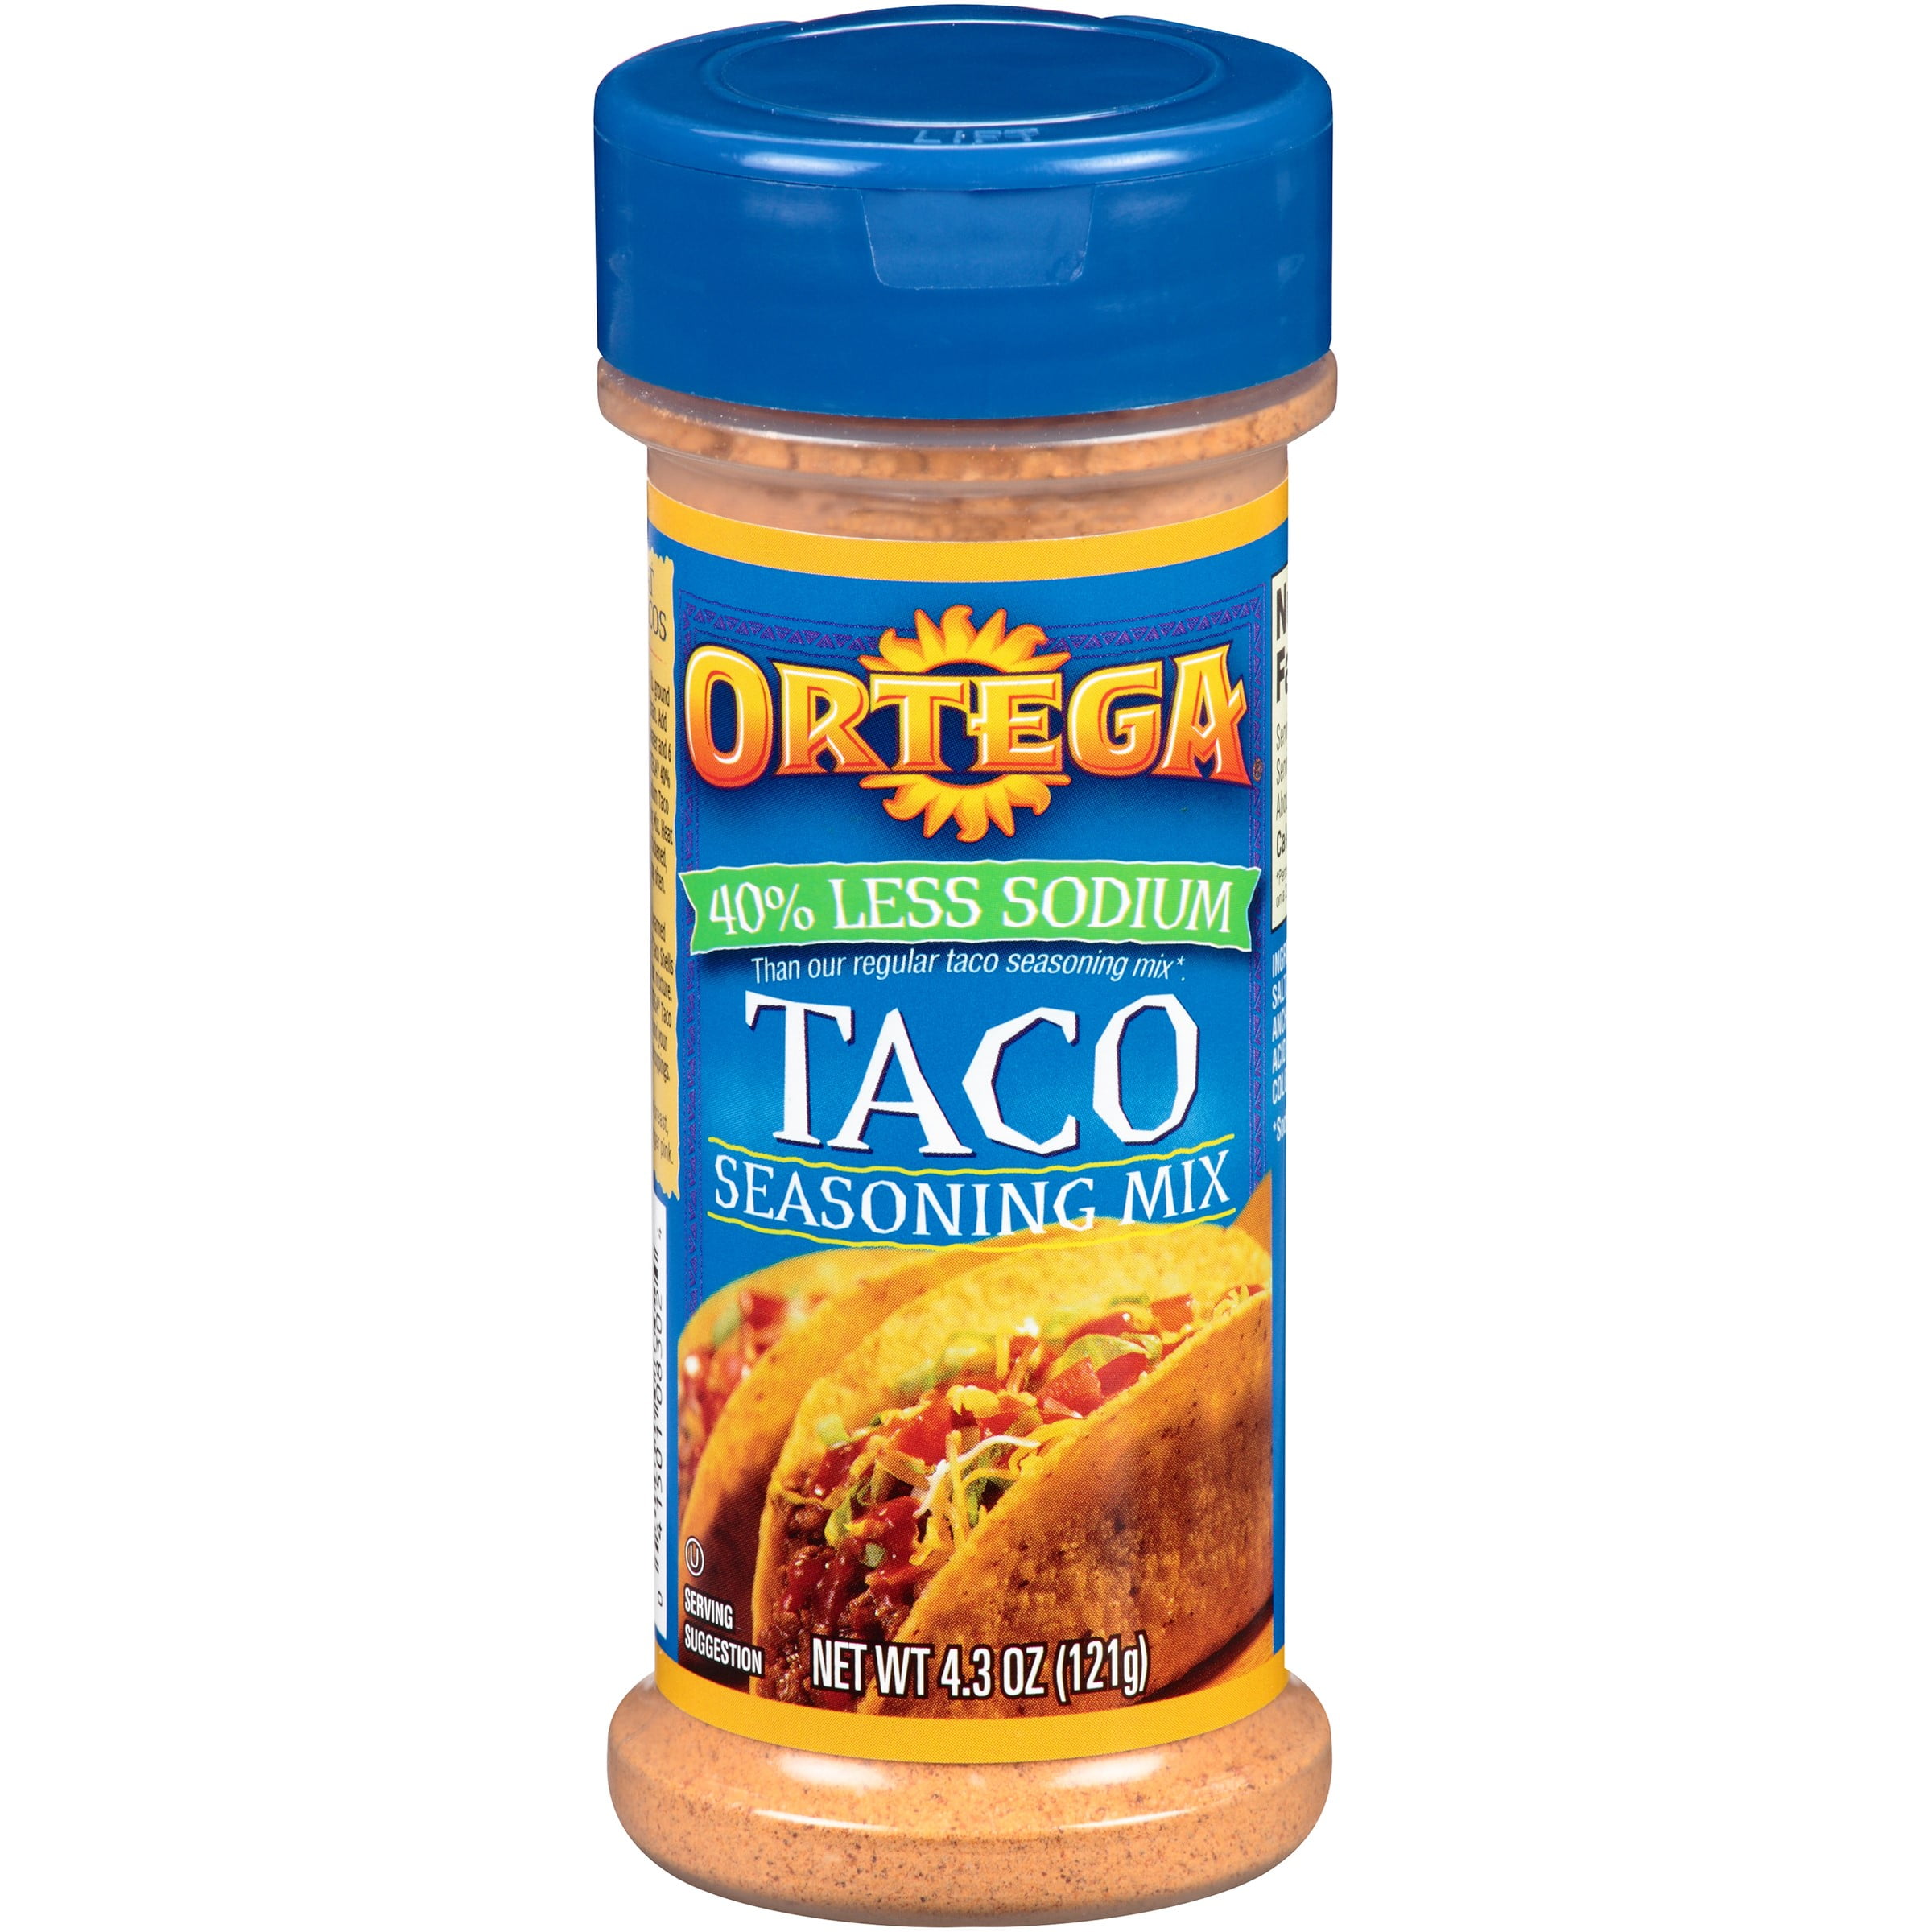 Ortega % Less Sodium Taco Seasoning, 4.3 Oz 